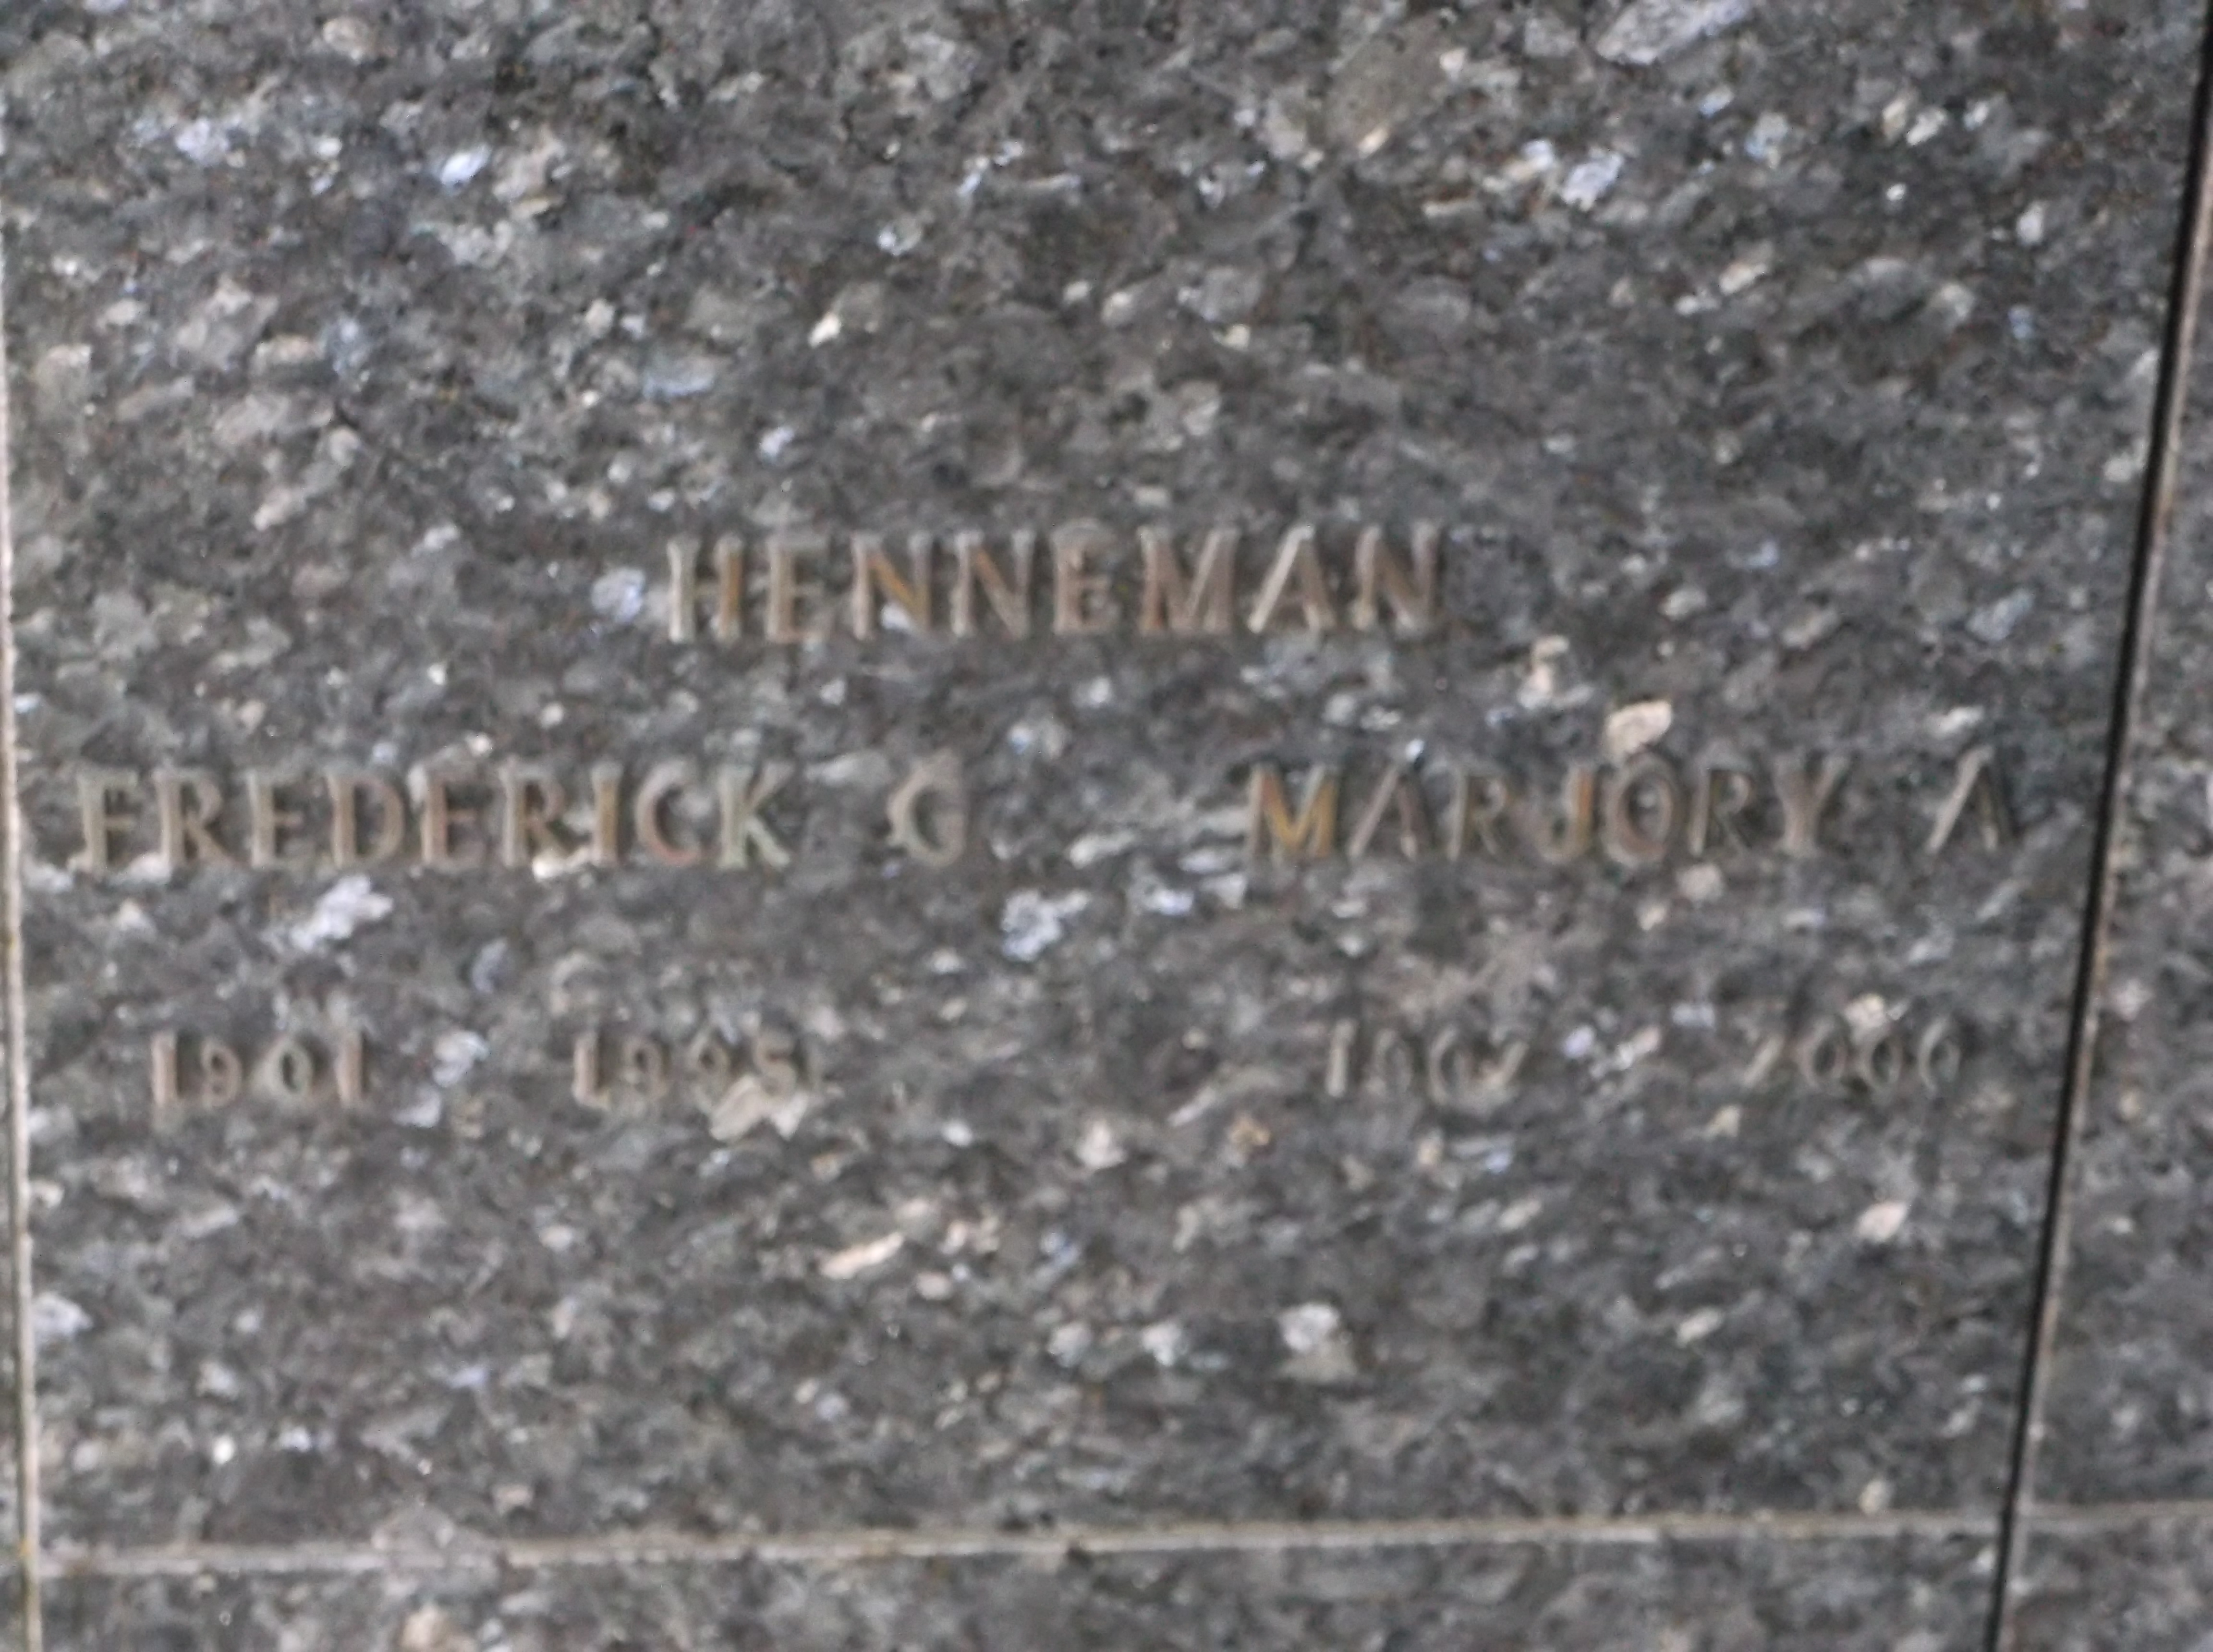 Frederick G Henneman